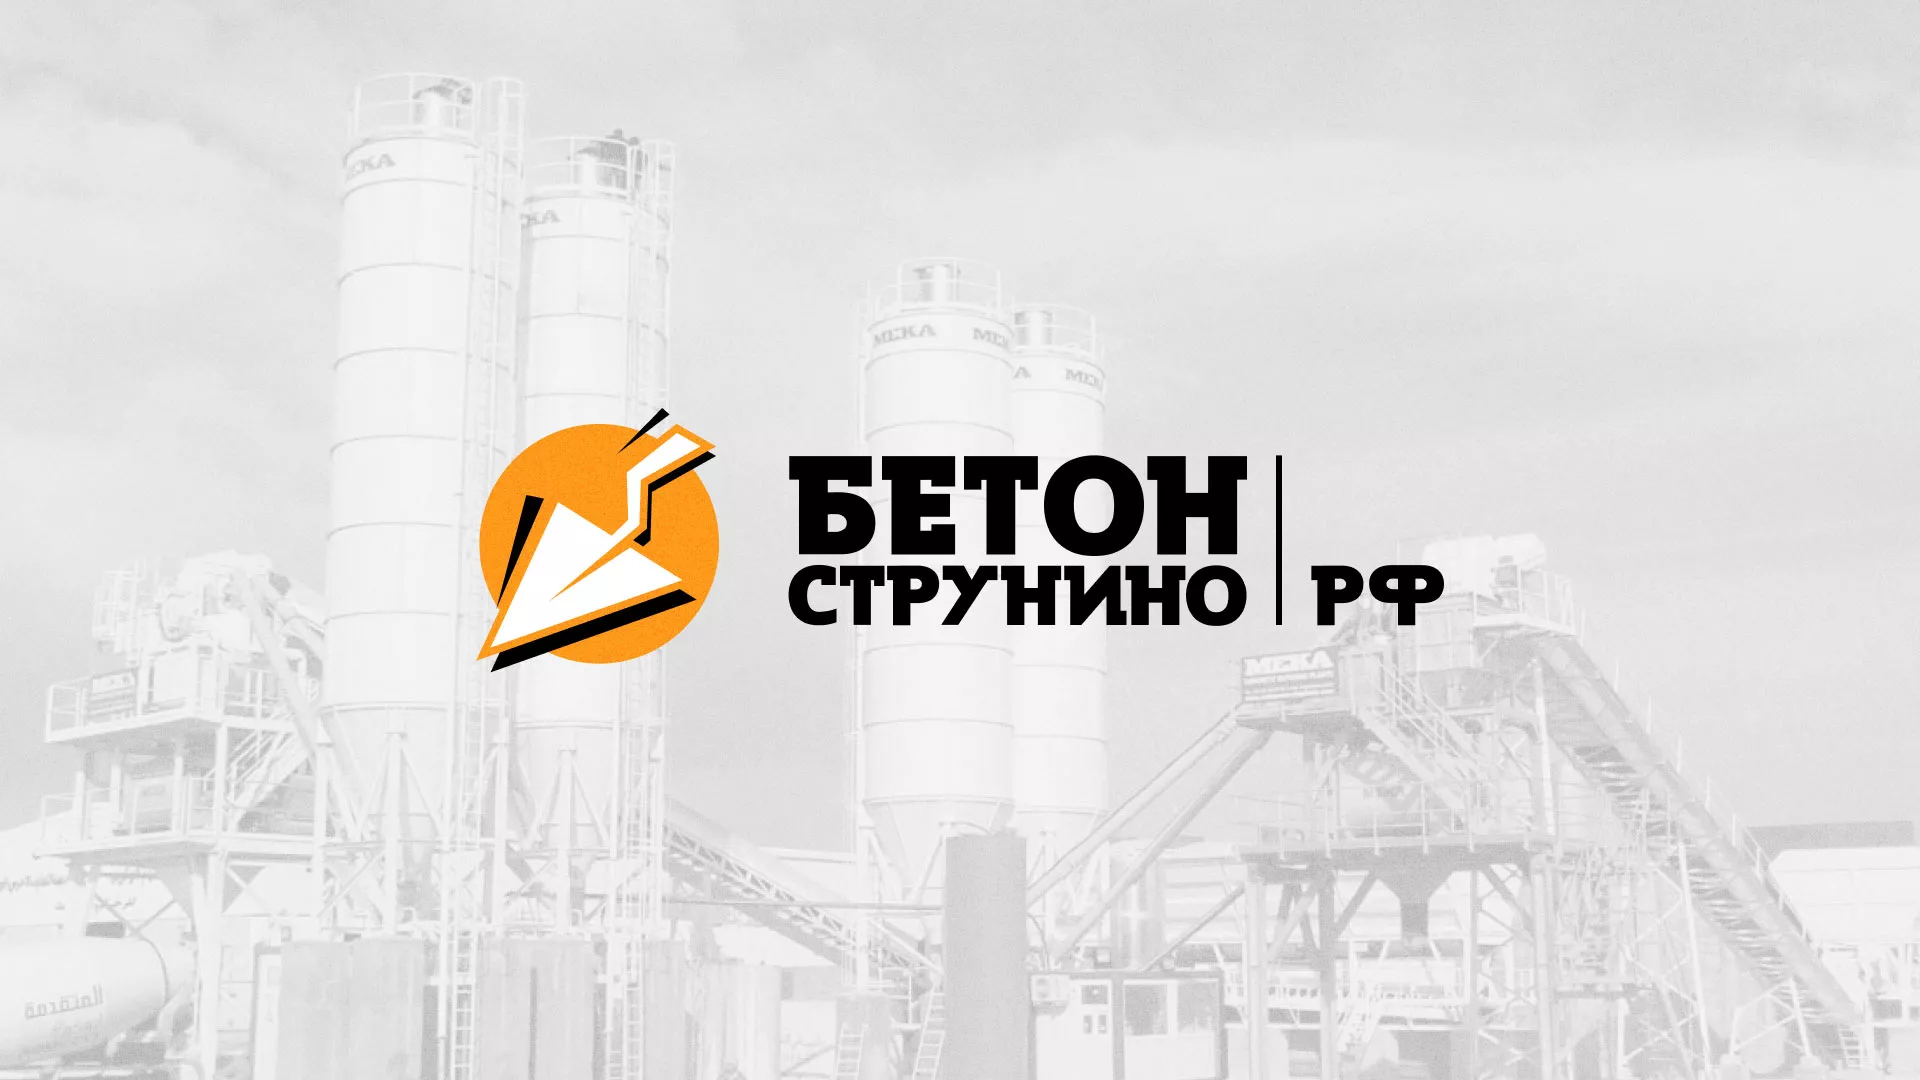 Разработка логотипа для бетонного завода в Орехово-Зуево